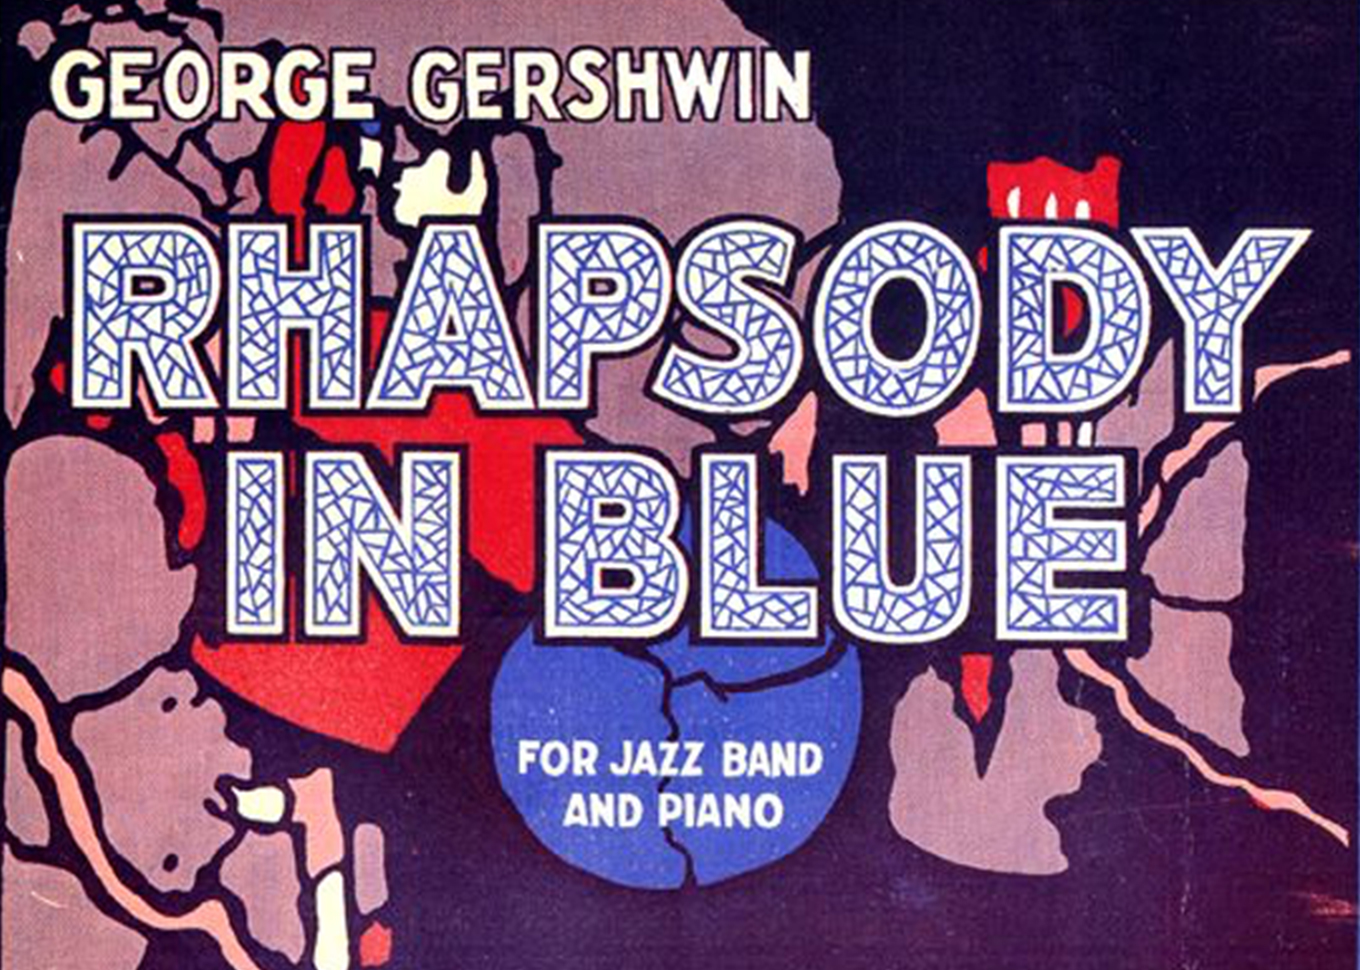 Rhapsody in Blue - Gershwin